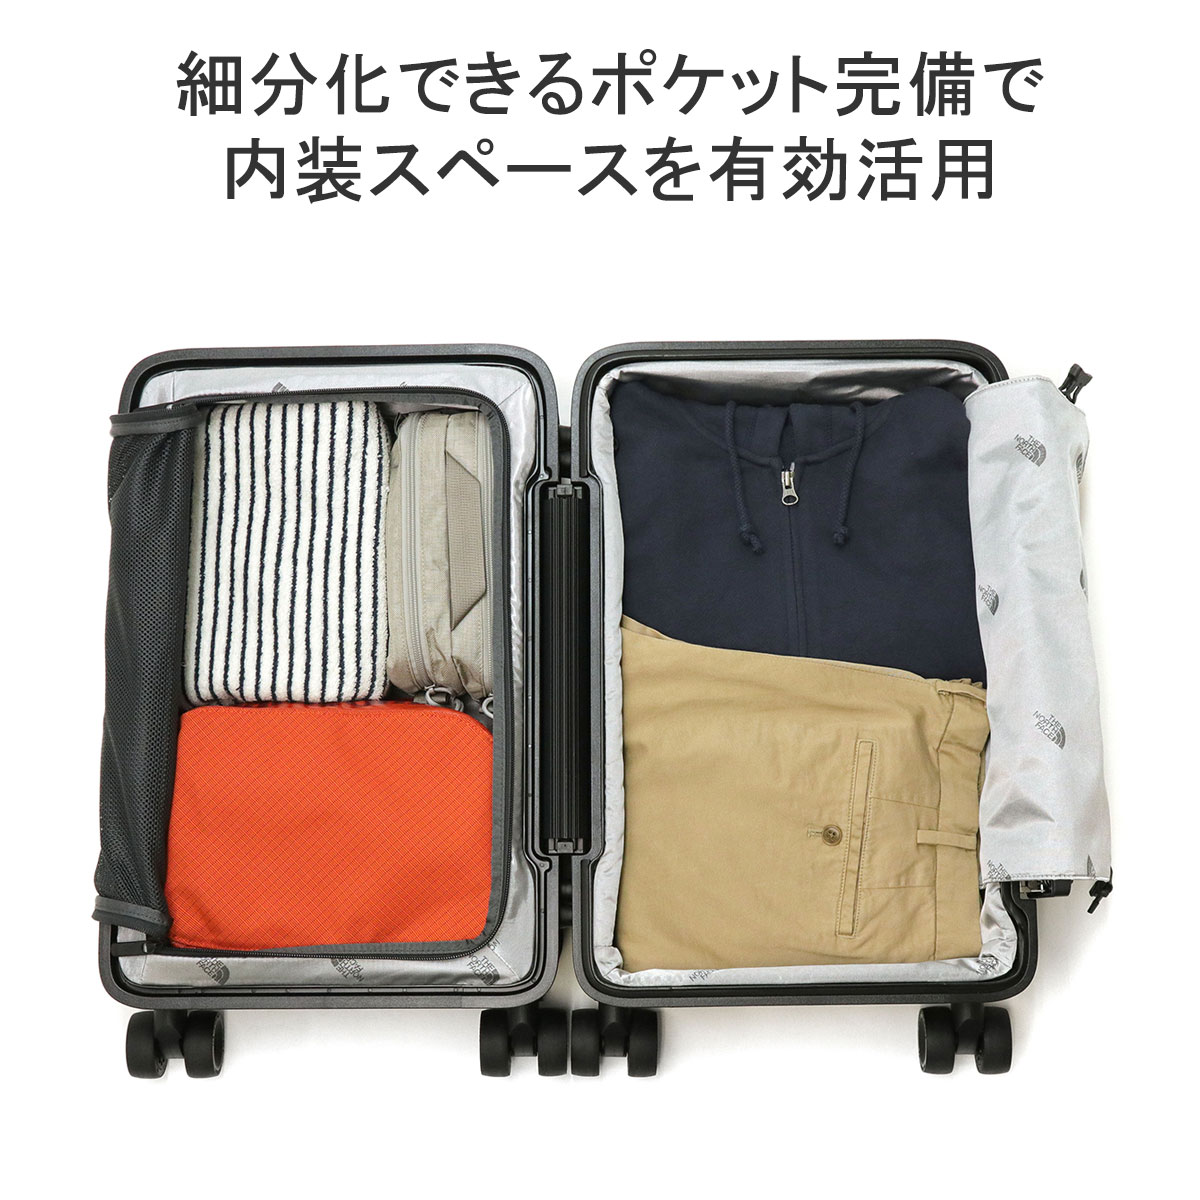 日本正規品 ザ・ノース・フェイス スーツケース 機内持ち込み S S 